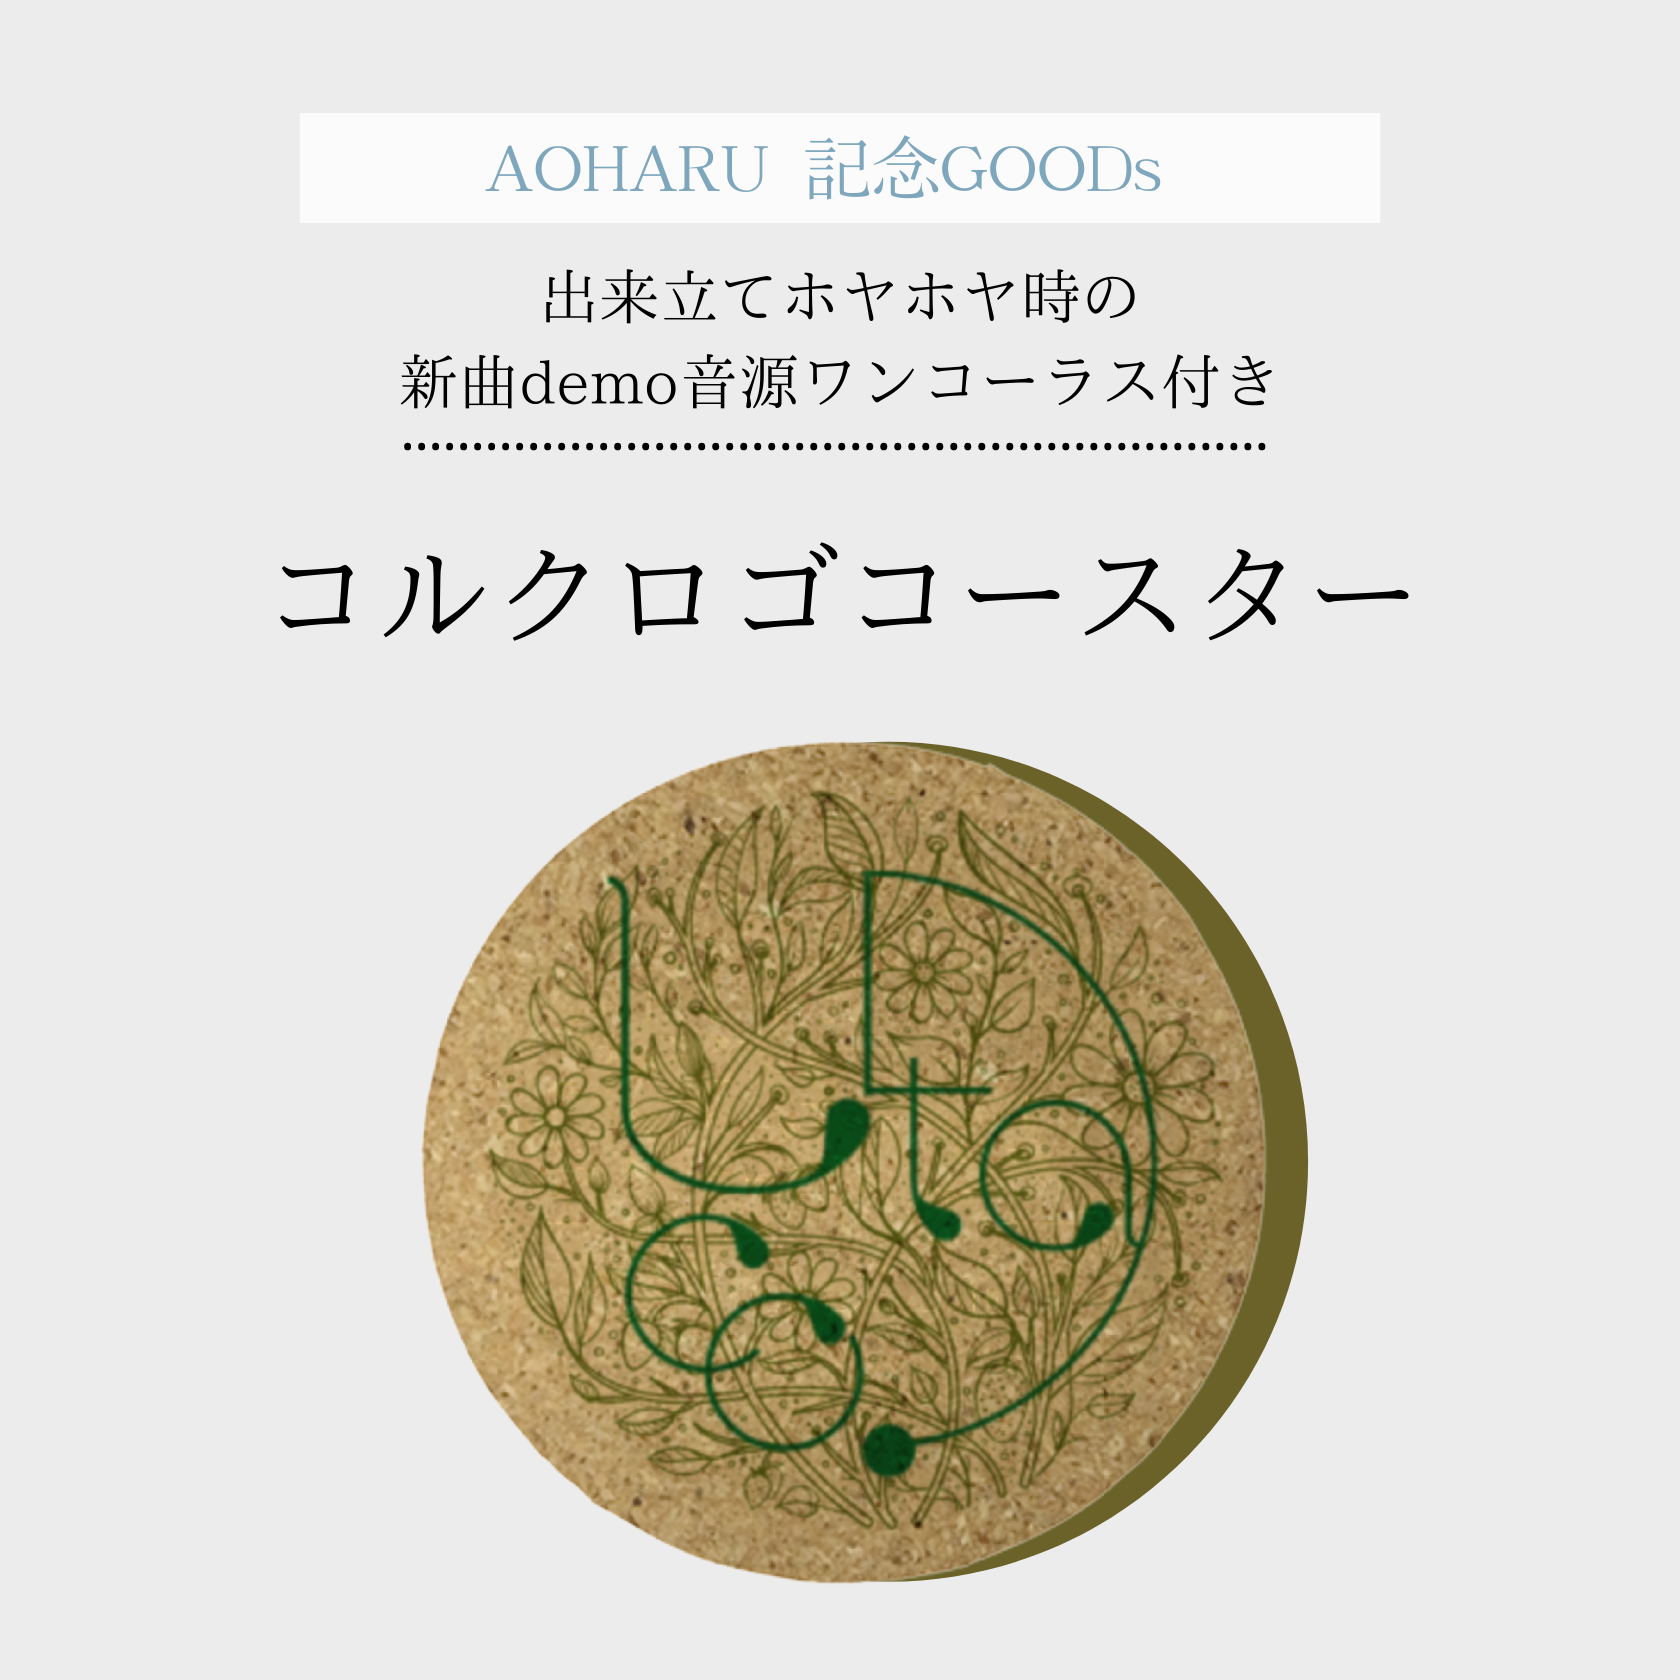 【新曲demo音源付き】AOHARU 記念GOODS コルクロゴコースタージャケット写真